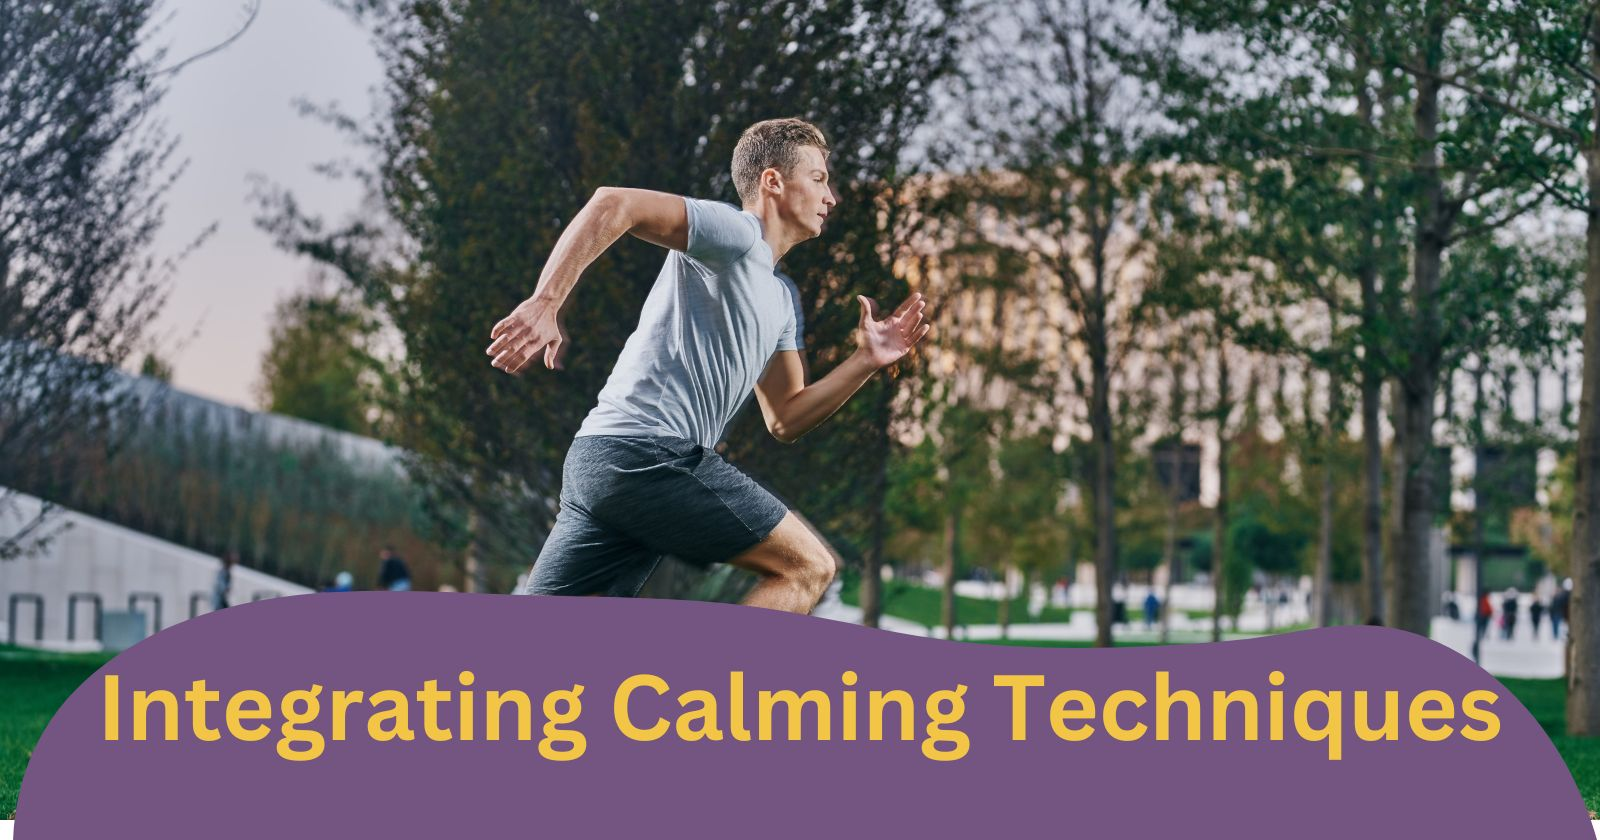 Integrating Calming Techniques
Man doing jogging